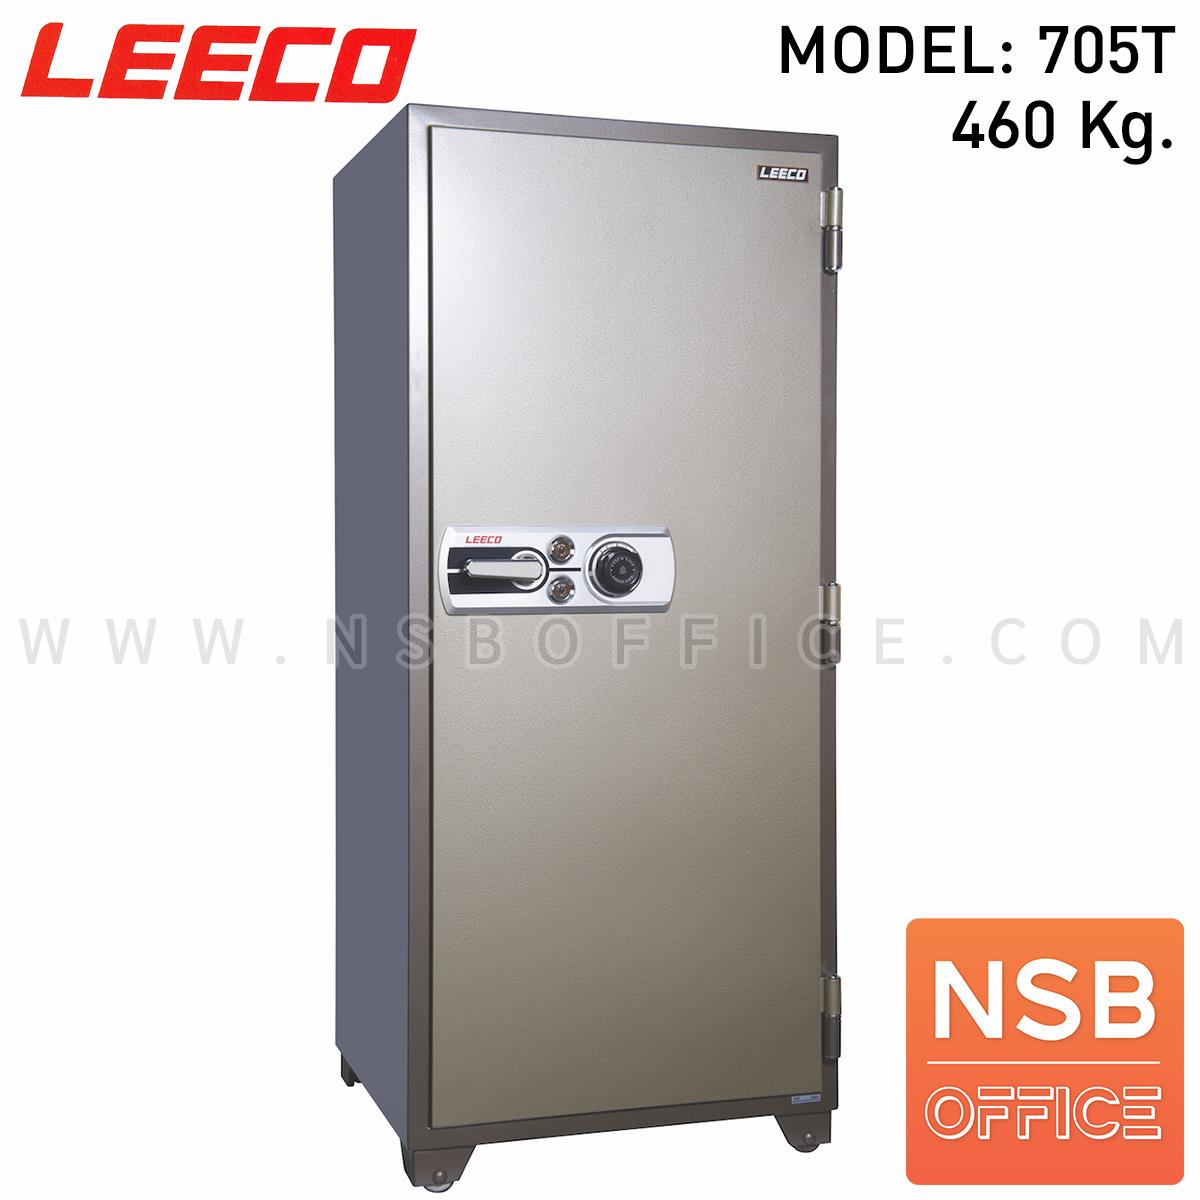 F02A036:ตู้เซฟนิรภัย 460 กก. ลีโก้ รุ่น LEECO-705T มี 2 กุญแจ 1 รหัส (เปลี่ยนรหัสได้)   